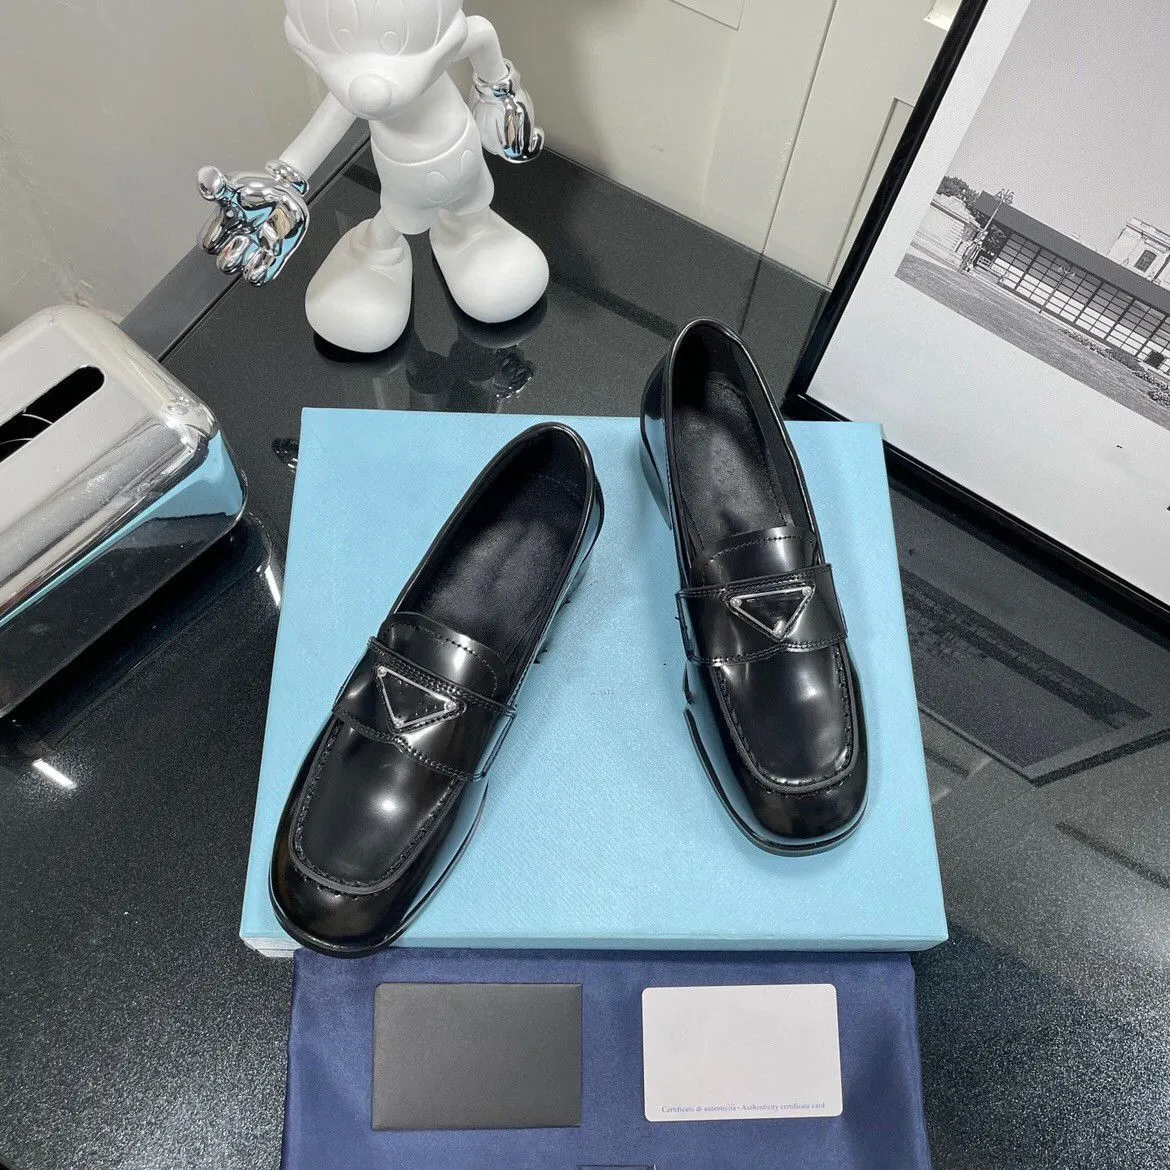 2022 Loafers kohud baotou sandaler halvt spänne äkta läder platt botten älskar Muller kvinnliga ytterkläder